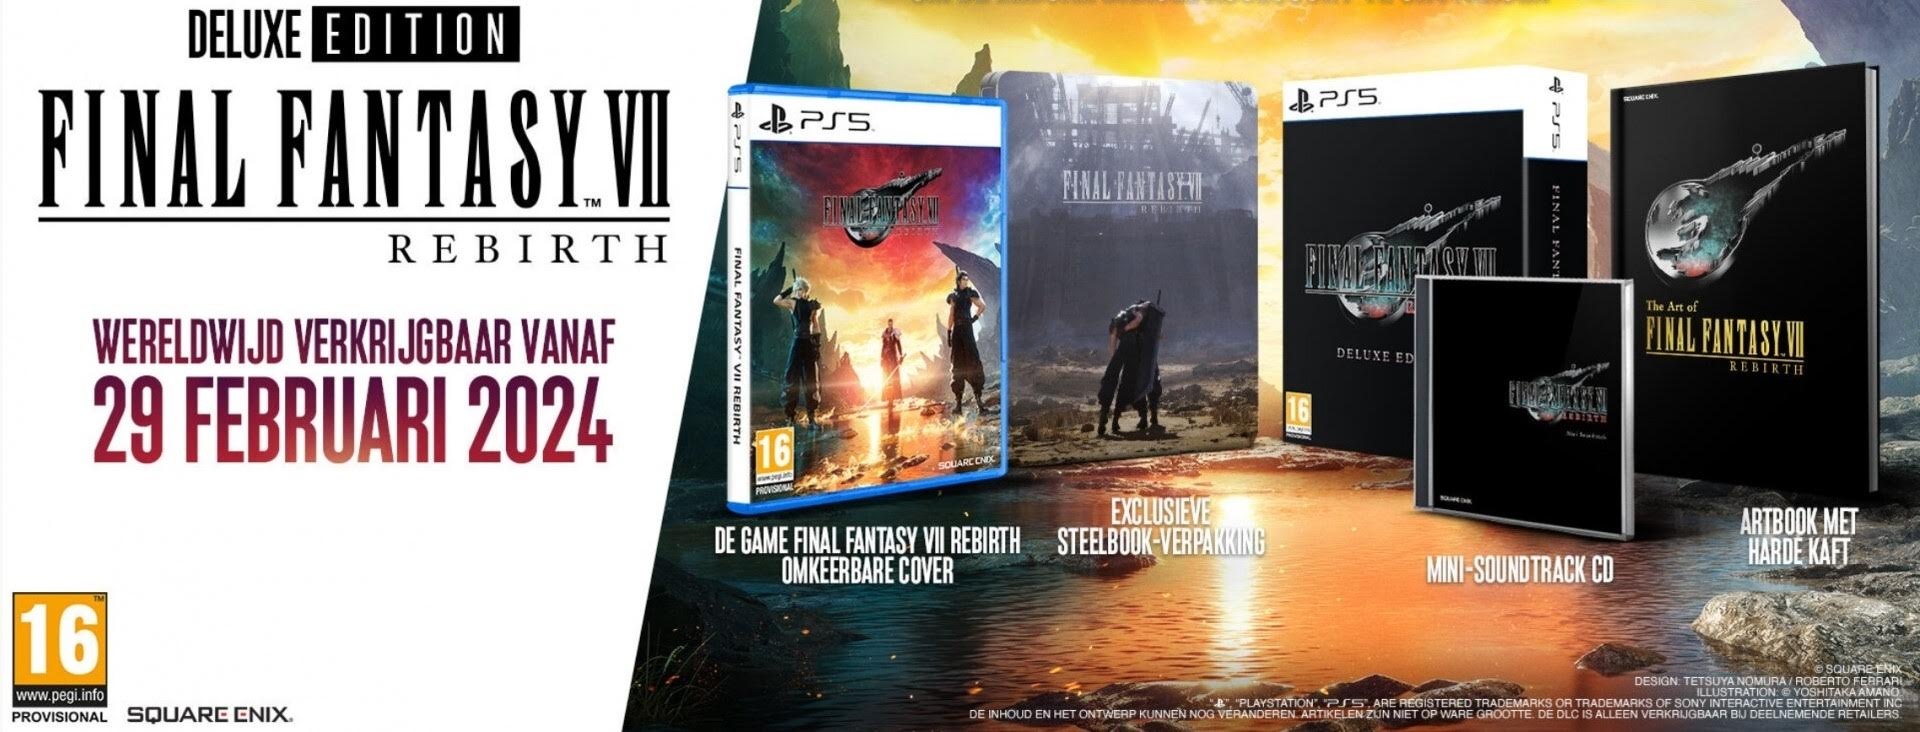 Final Fantasy VII Rebirth - Deluxe Edition kopen